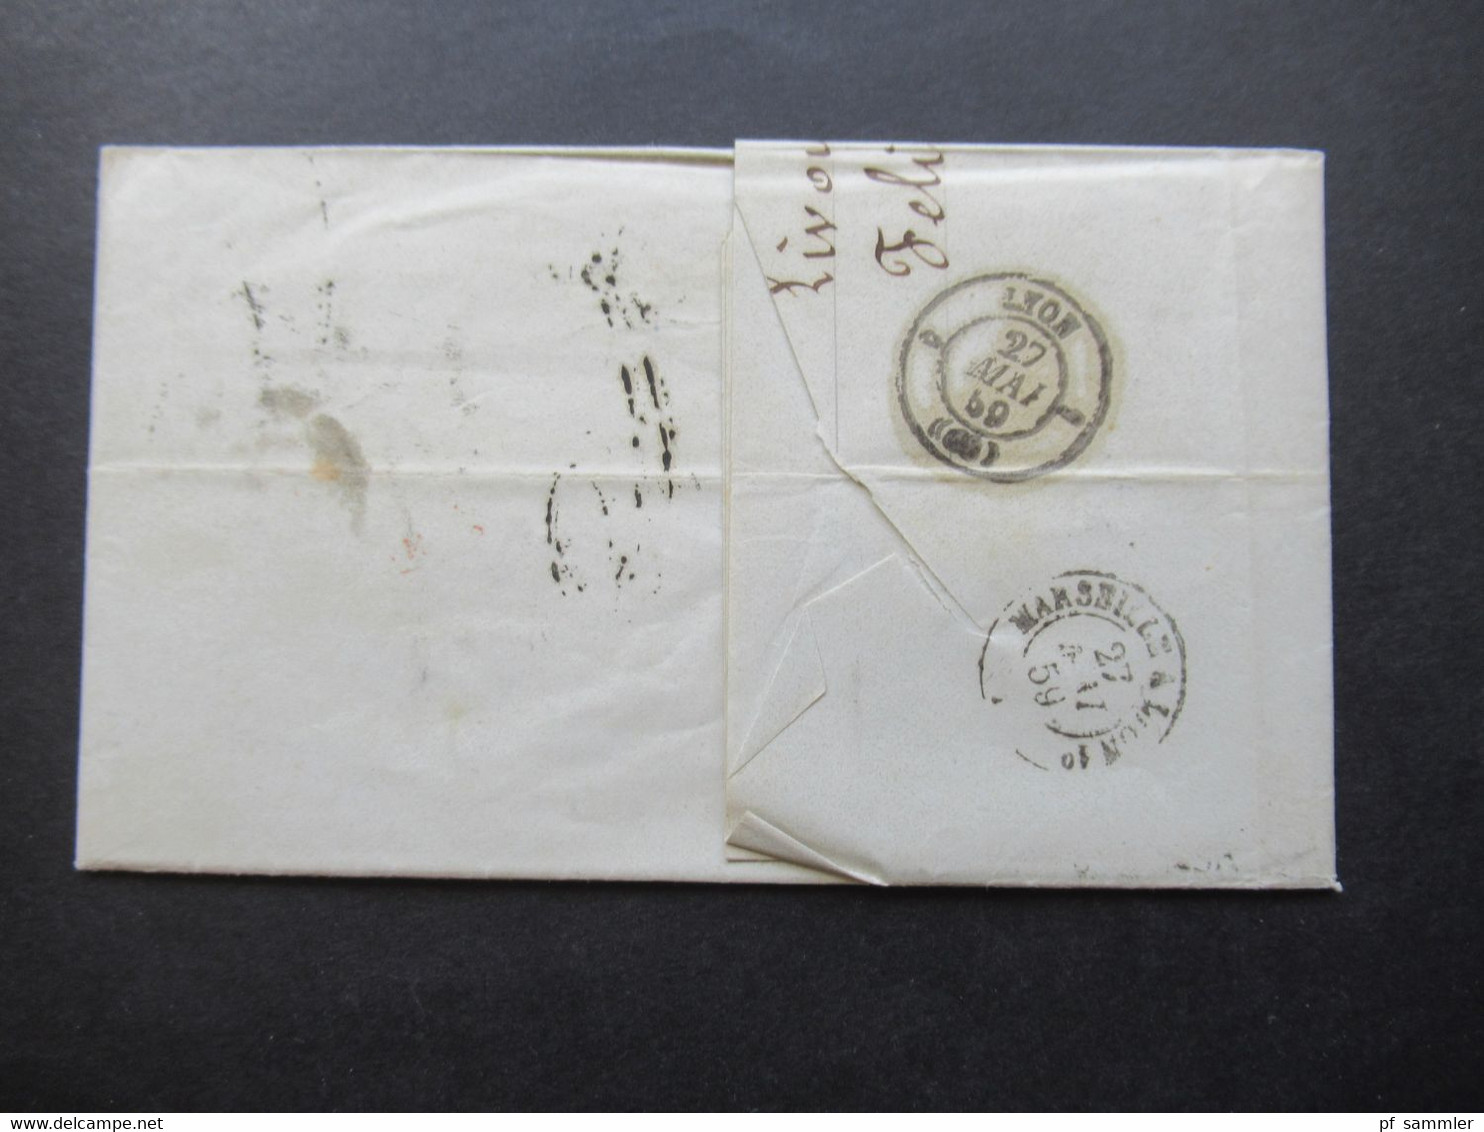 Auslandsbrief Mit Inhalt 1859 Livorno - Lyon Roter K2 Tosc Marseille Handschriftlicher Vermerk Vapeur Via Marseille - Toscane